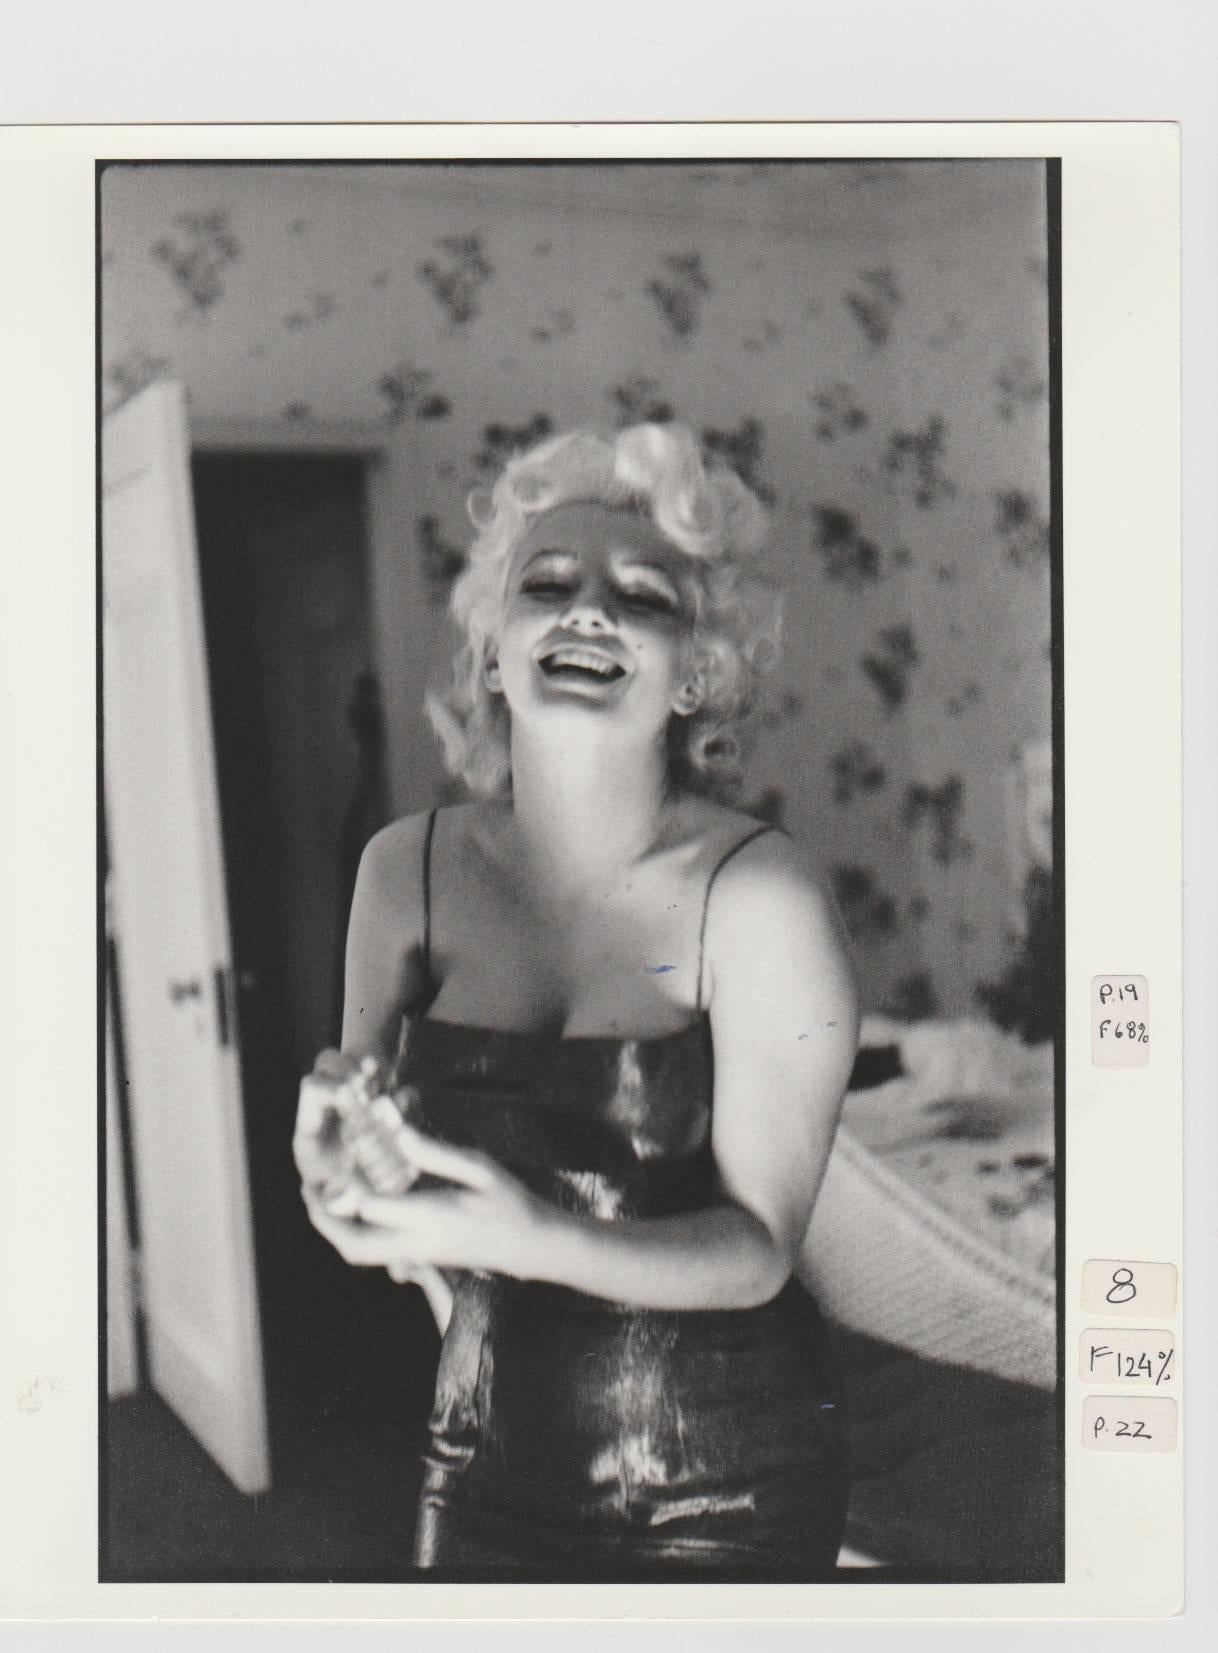 Edward Feingersh Black and White Photograph – Marilyn Monroe, Druck von 1988 aus dem Originalnegativ